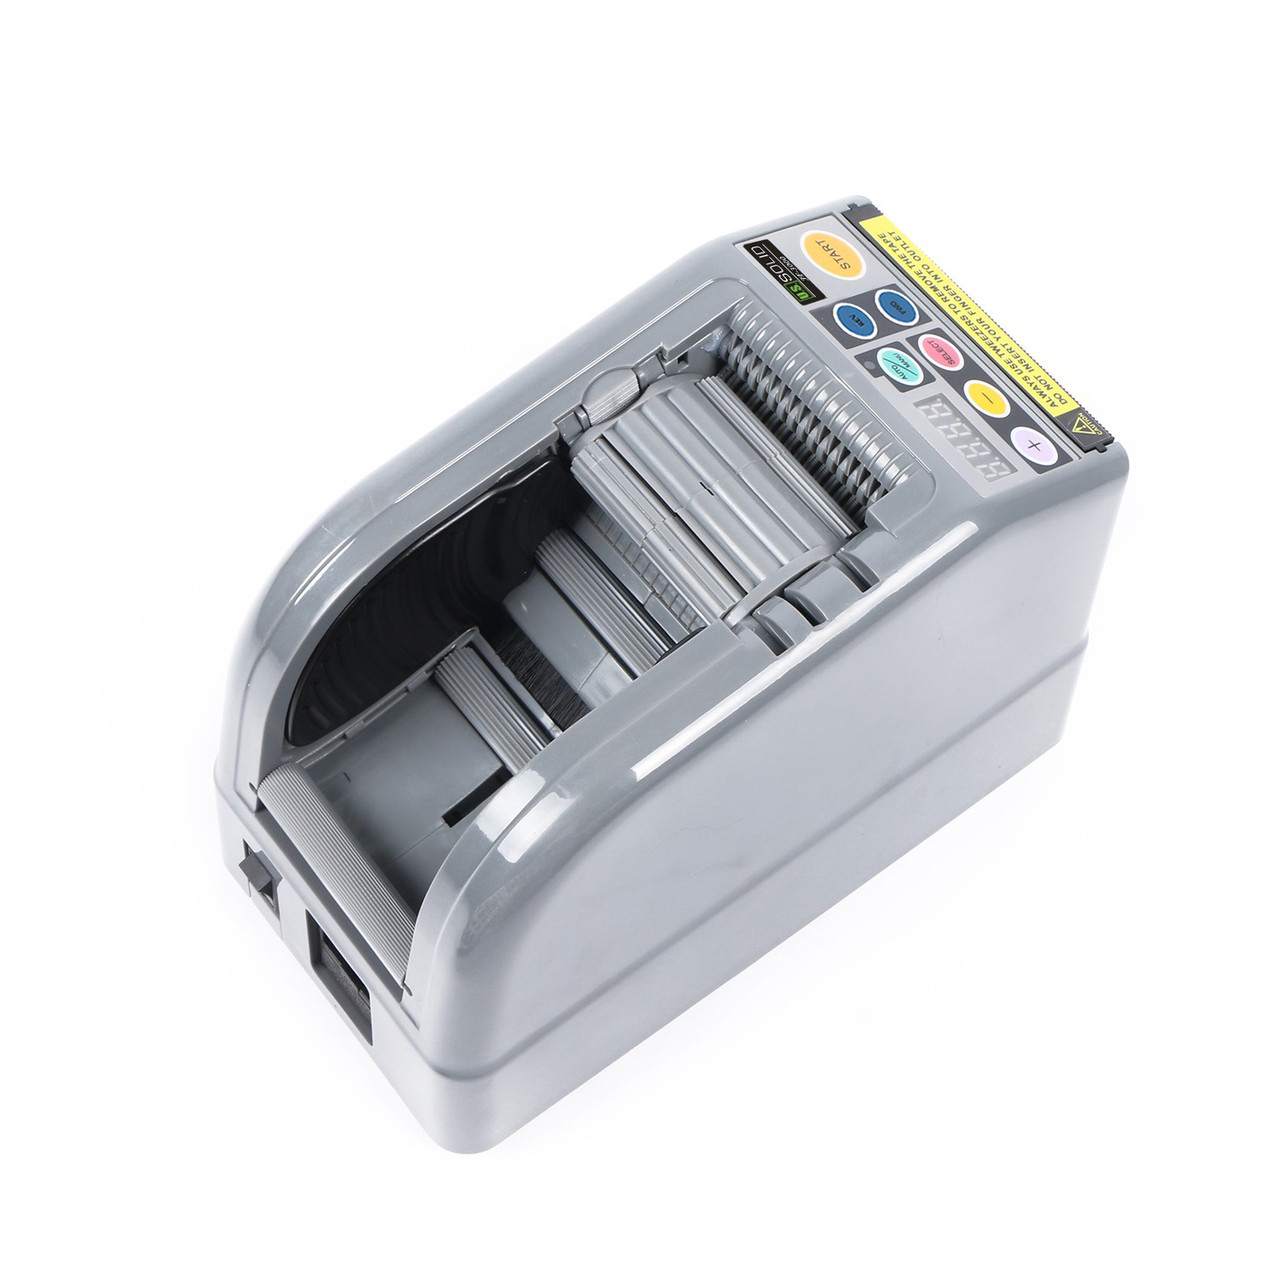 Auto Tape Dispenser EZ-10K - Automation Aides